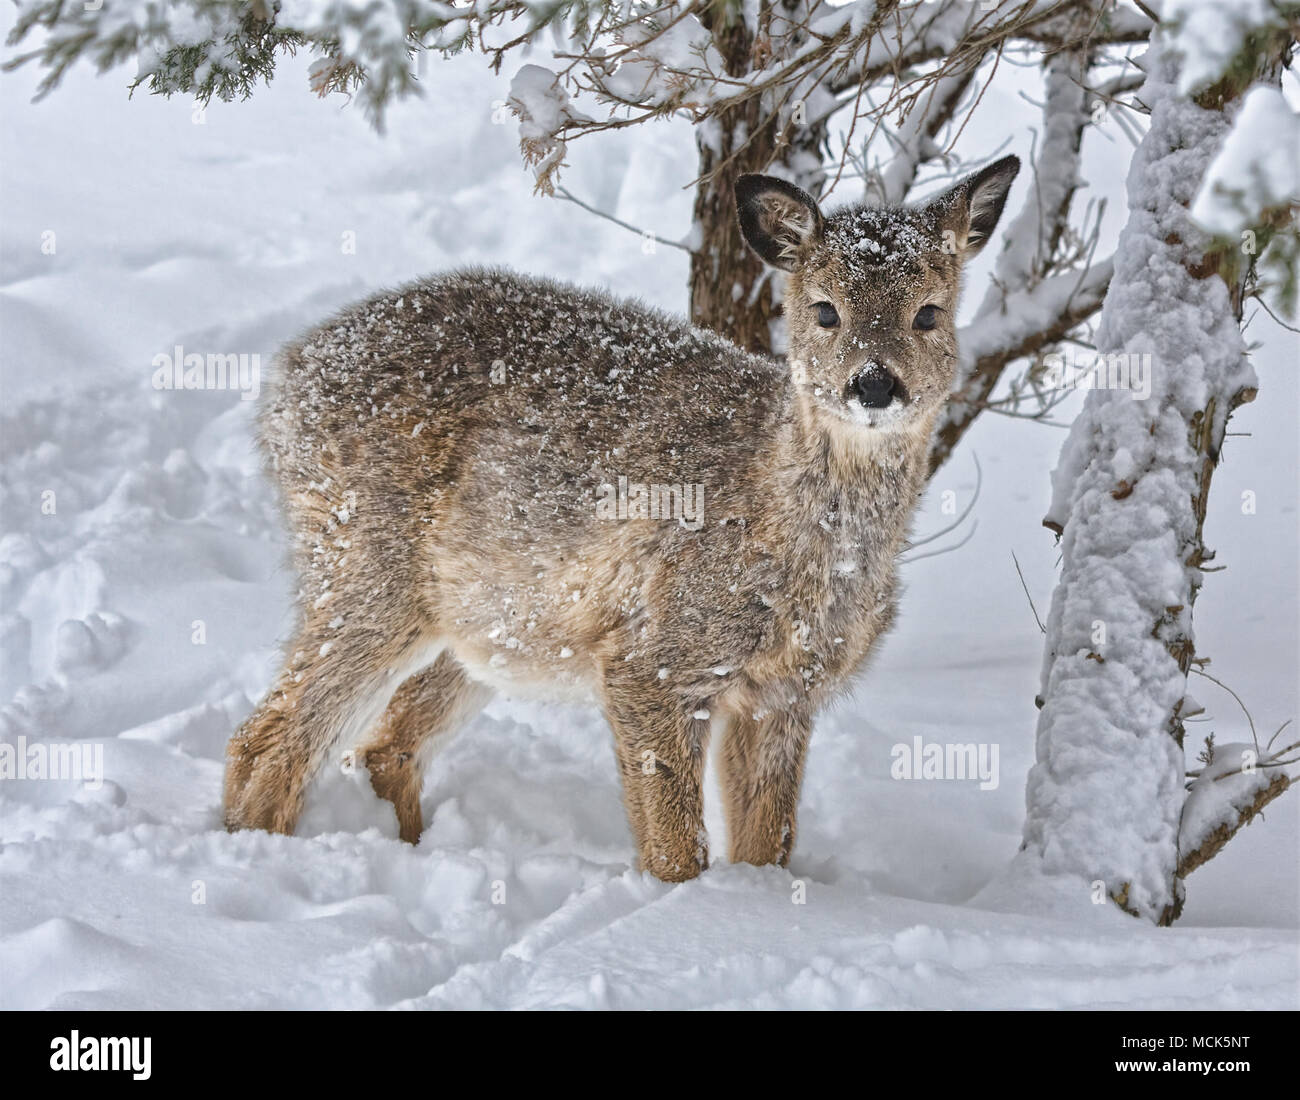 La fin de naissance plus blanc-tal deer fawn se bat pour le Dakota du Sud Décembre' étude de tempête de neige. Banque D'Images